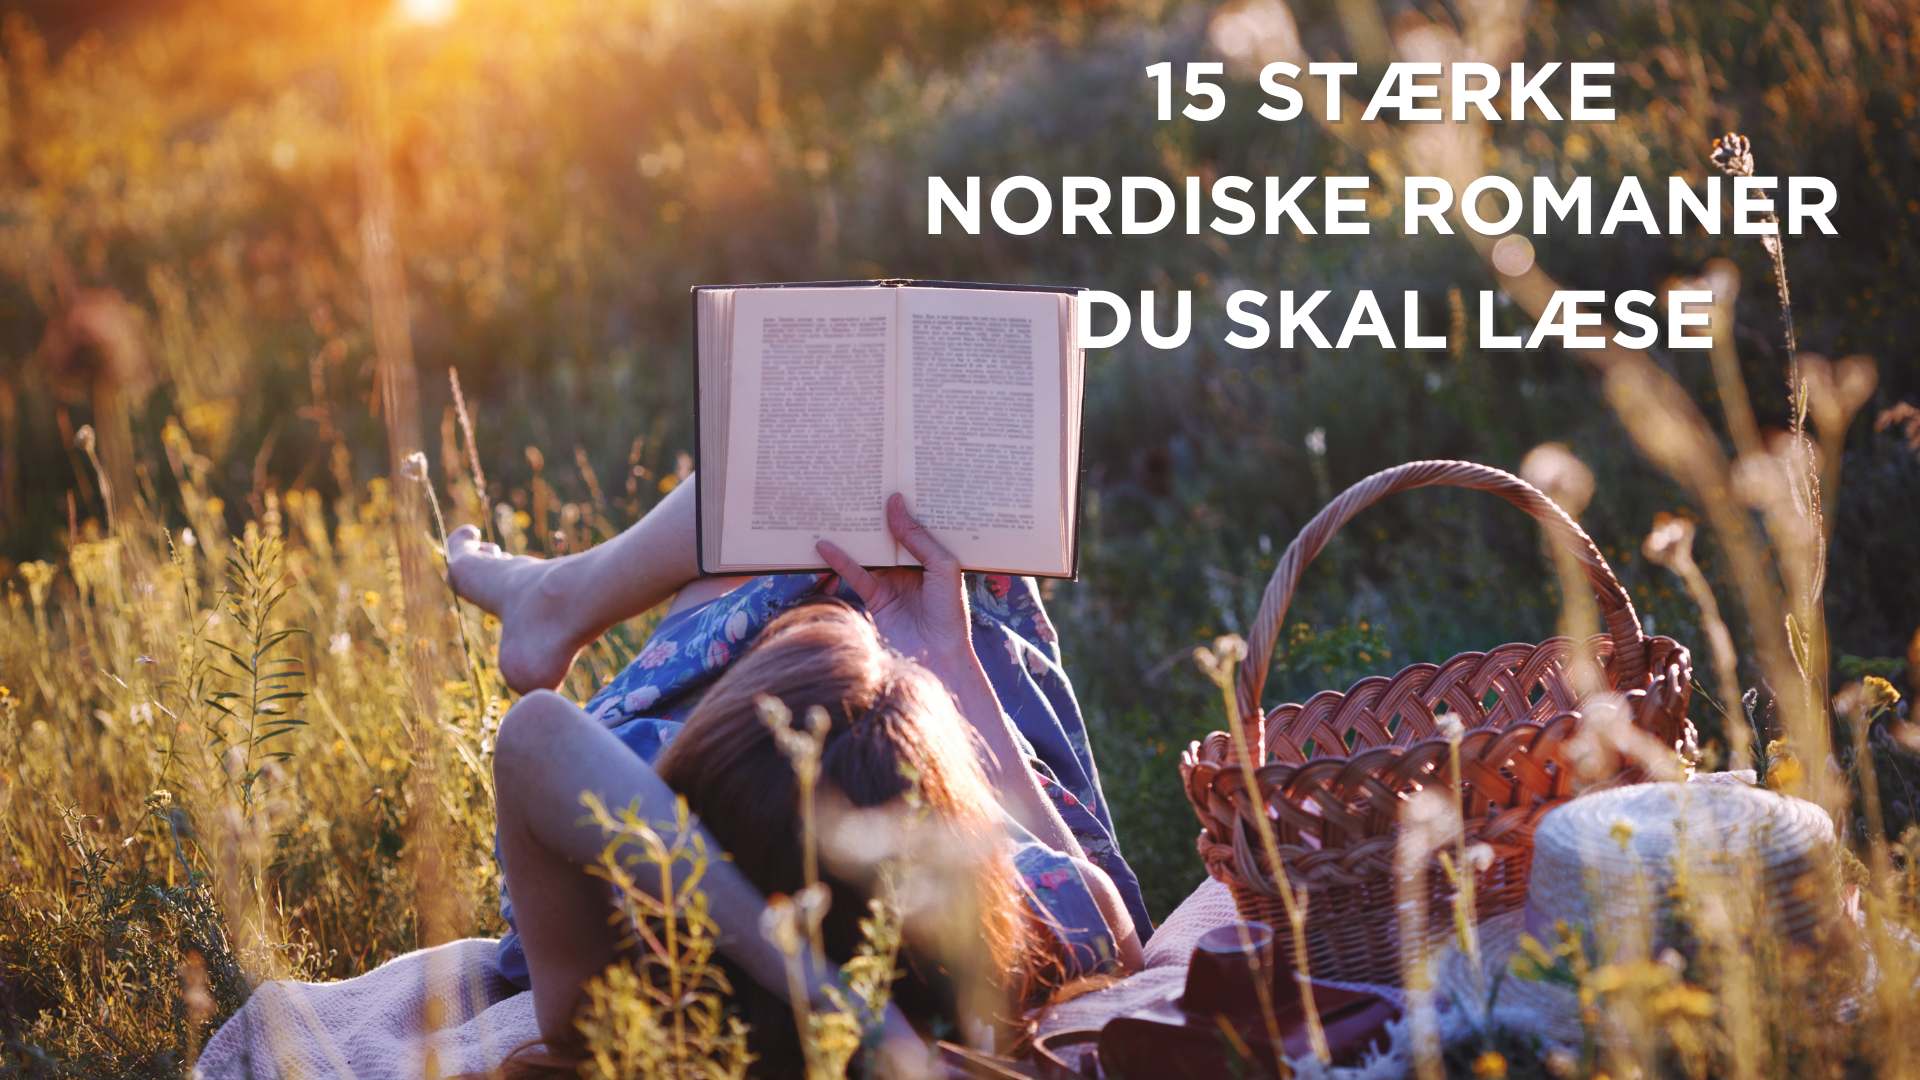 15 stærke nordiske romaner du skal læse